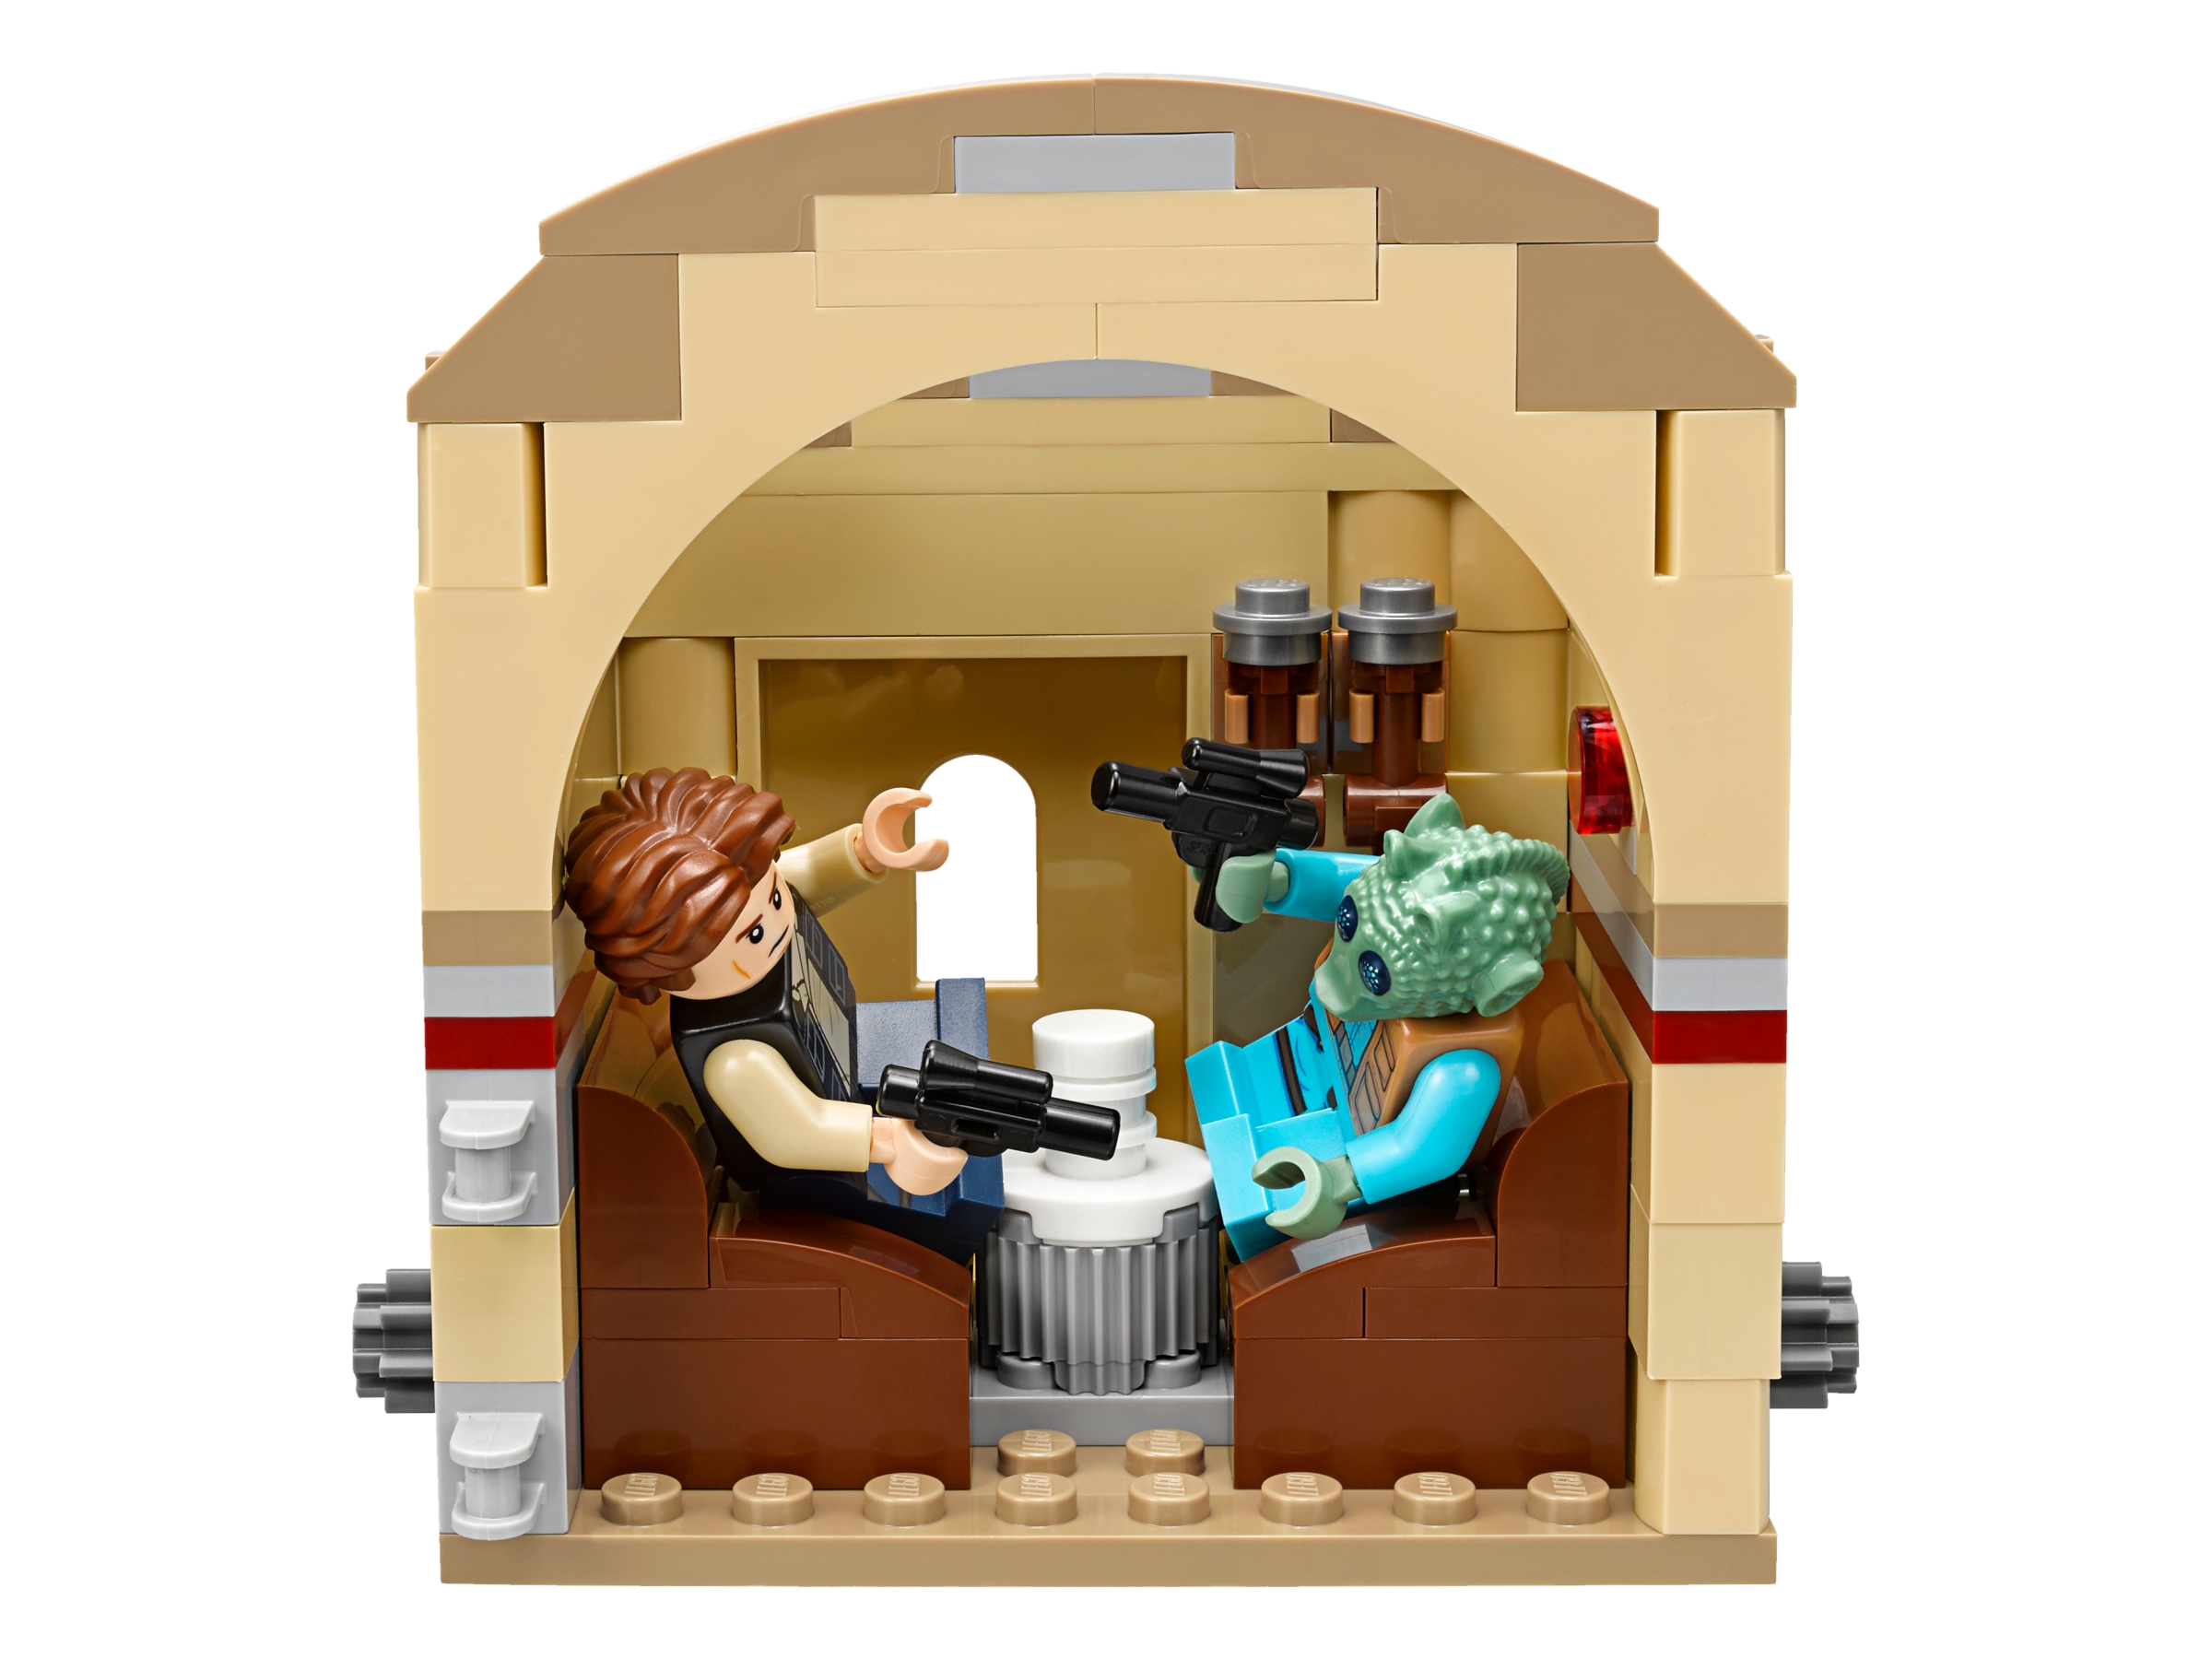 Lego Star Wars 75205 nuevo embalaje original 